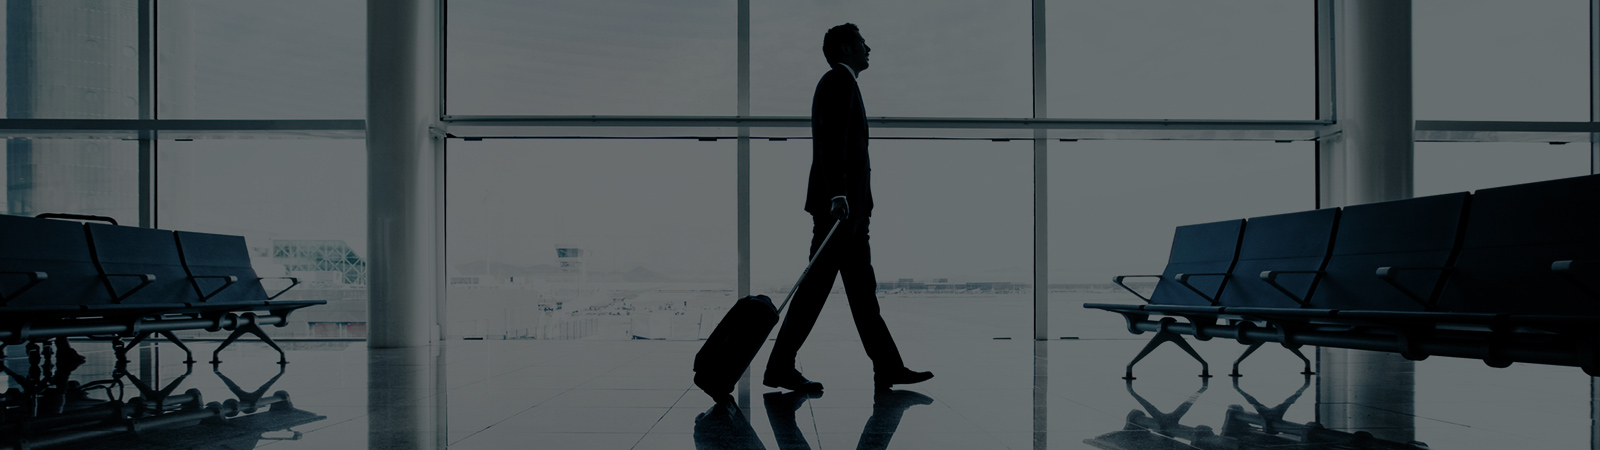 Un homme qui marche dans un aéroport avec sa valise